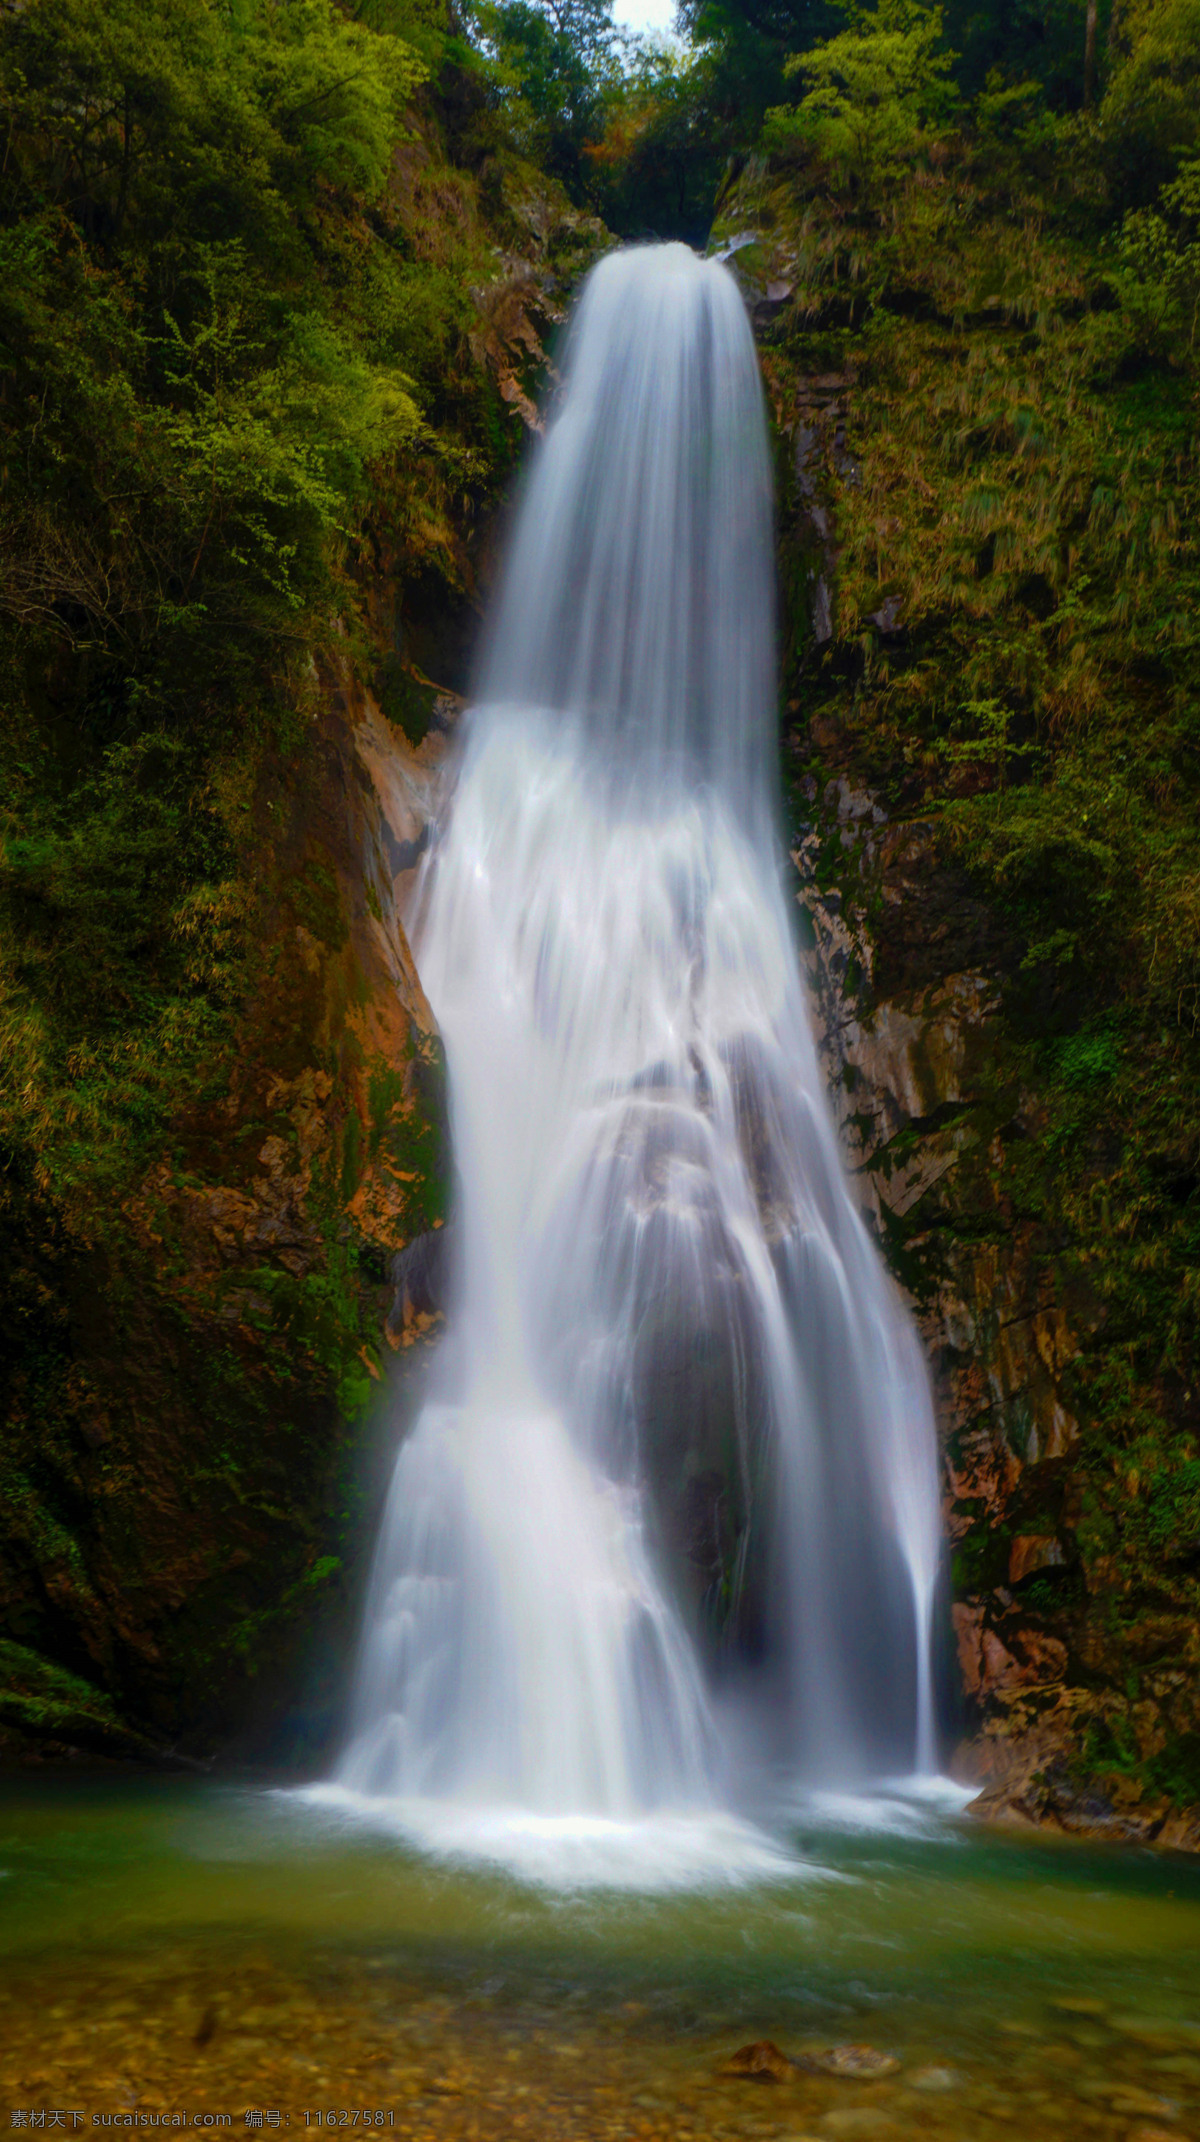 珠帘瀑布 瀑布 单反 风景 自然景观 山水风景